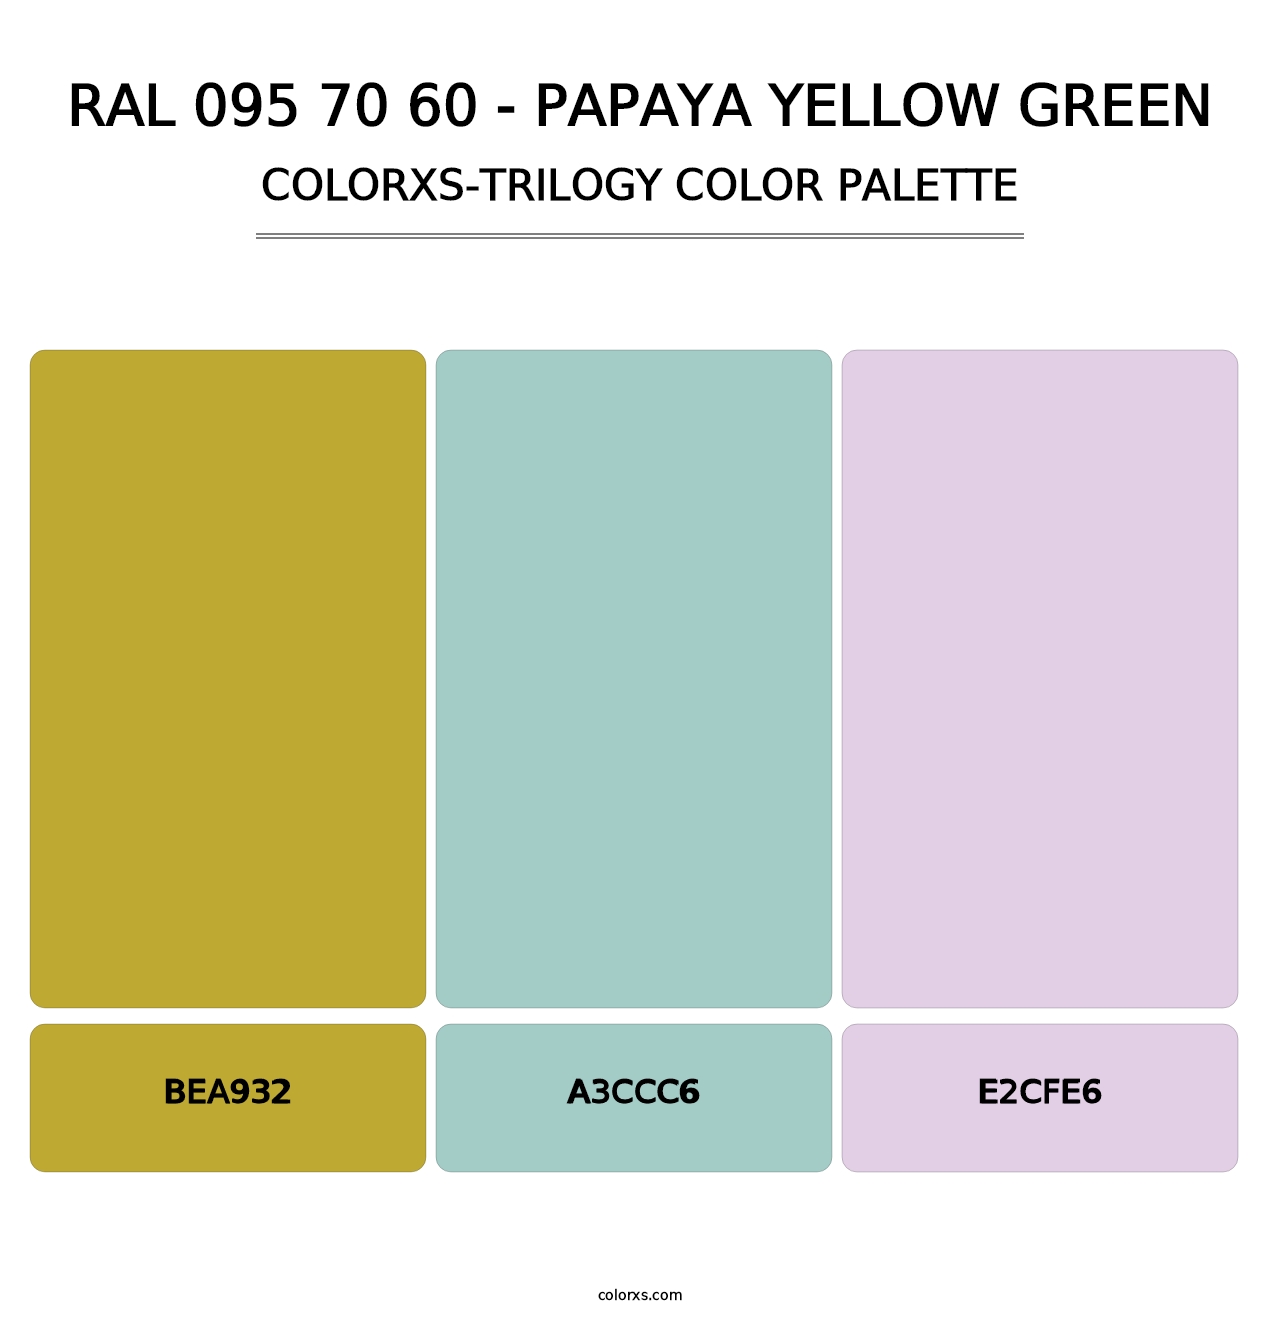 RAL 095 70 60 - Papaya Yellow Green - Colorxs Trilogy Palette